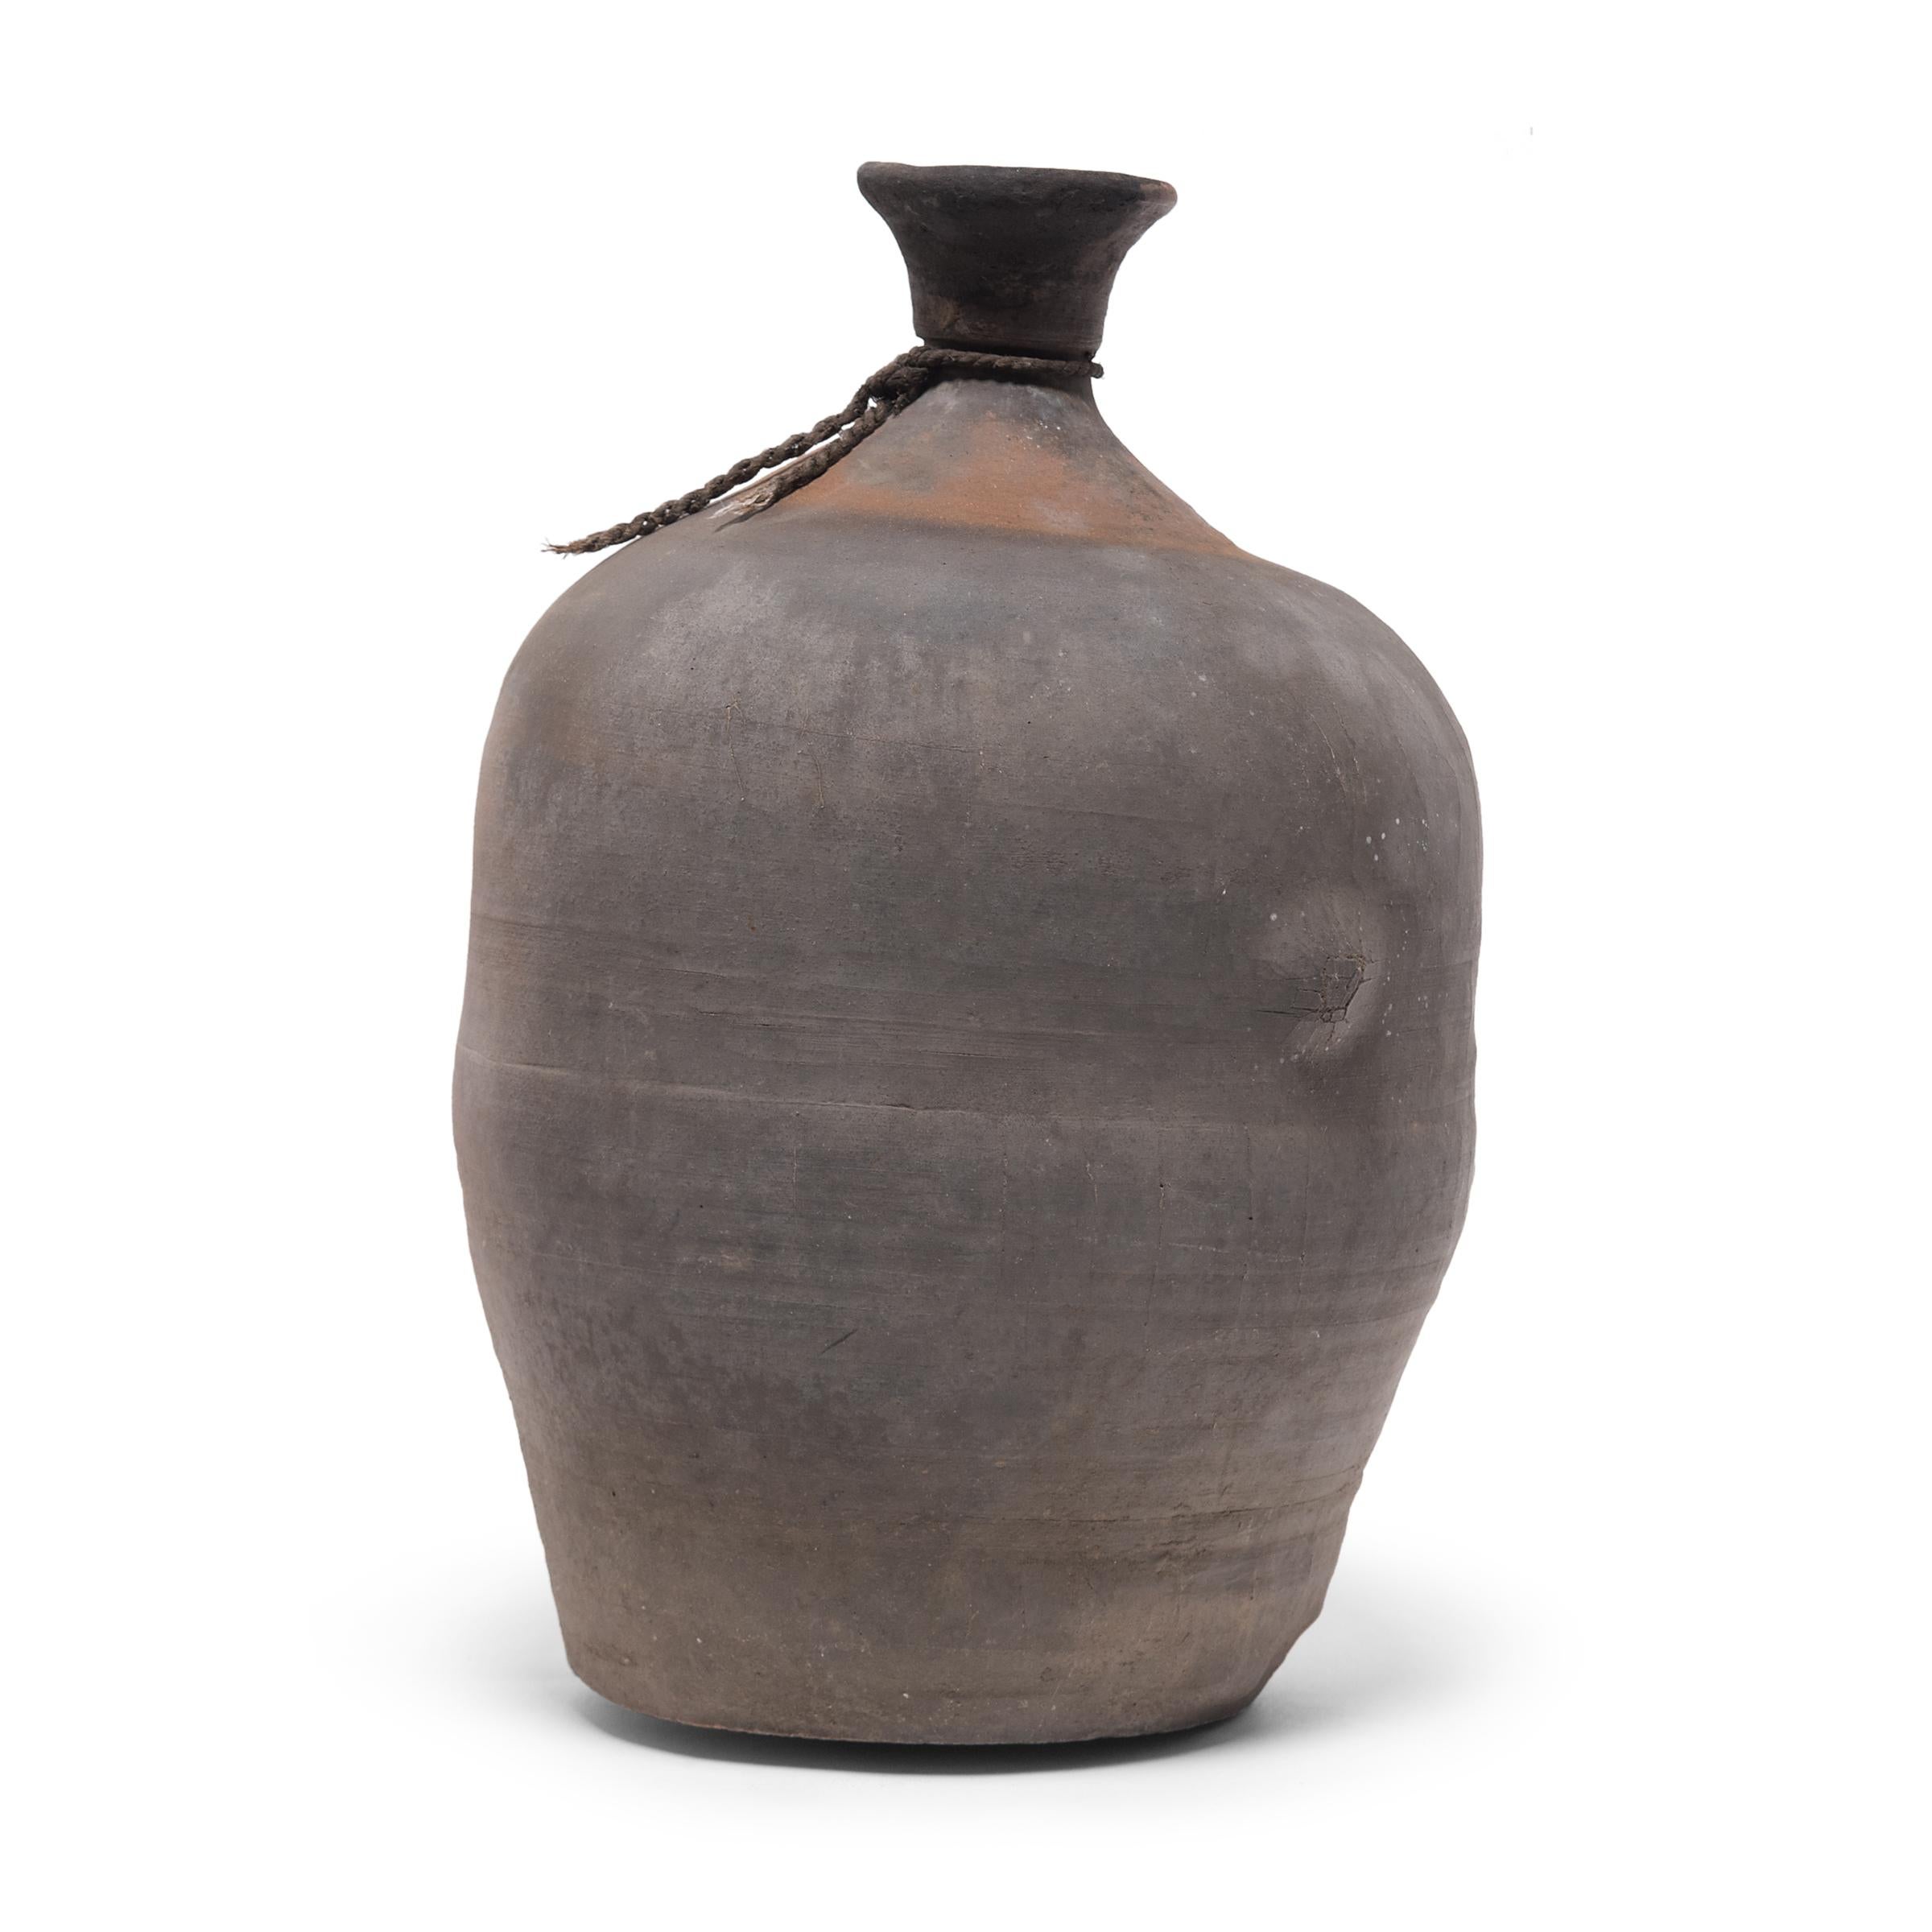 Dieses Keramikgefäß aus der chinesischen Provinz Shandong hat die Form eines Flaschenhalses und diente zur Aufbewahrung von Essig oder Wein aus Reis und Getreide. Das auf das frühe 20. Jahrhundert datierte Gefäß diente wahrscheinlich zur